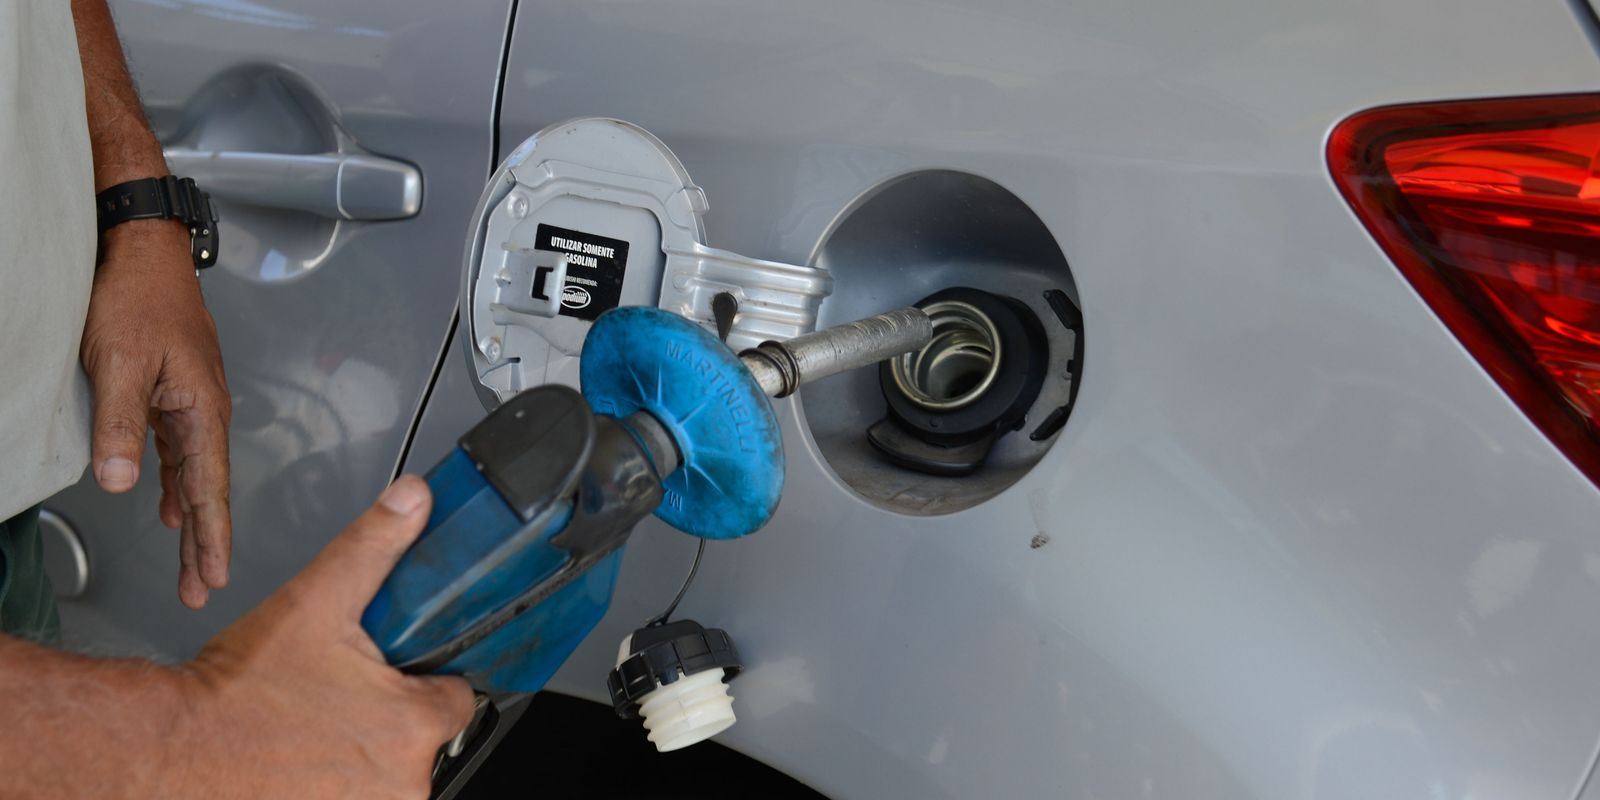 Preço da gasolina diminui e do diesel aumenta para distribuidoras  – finanças brasil